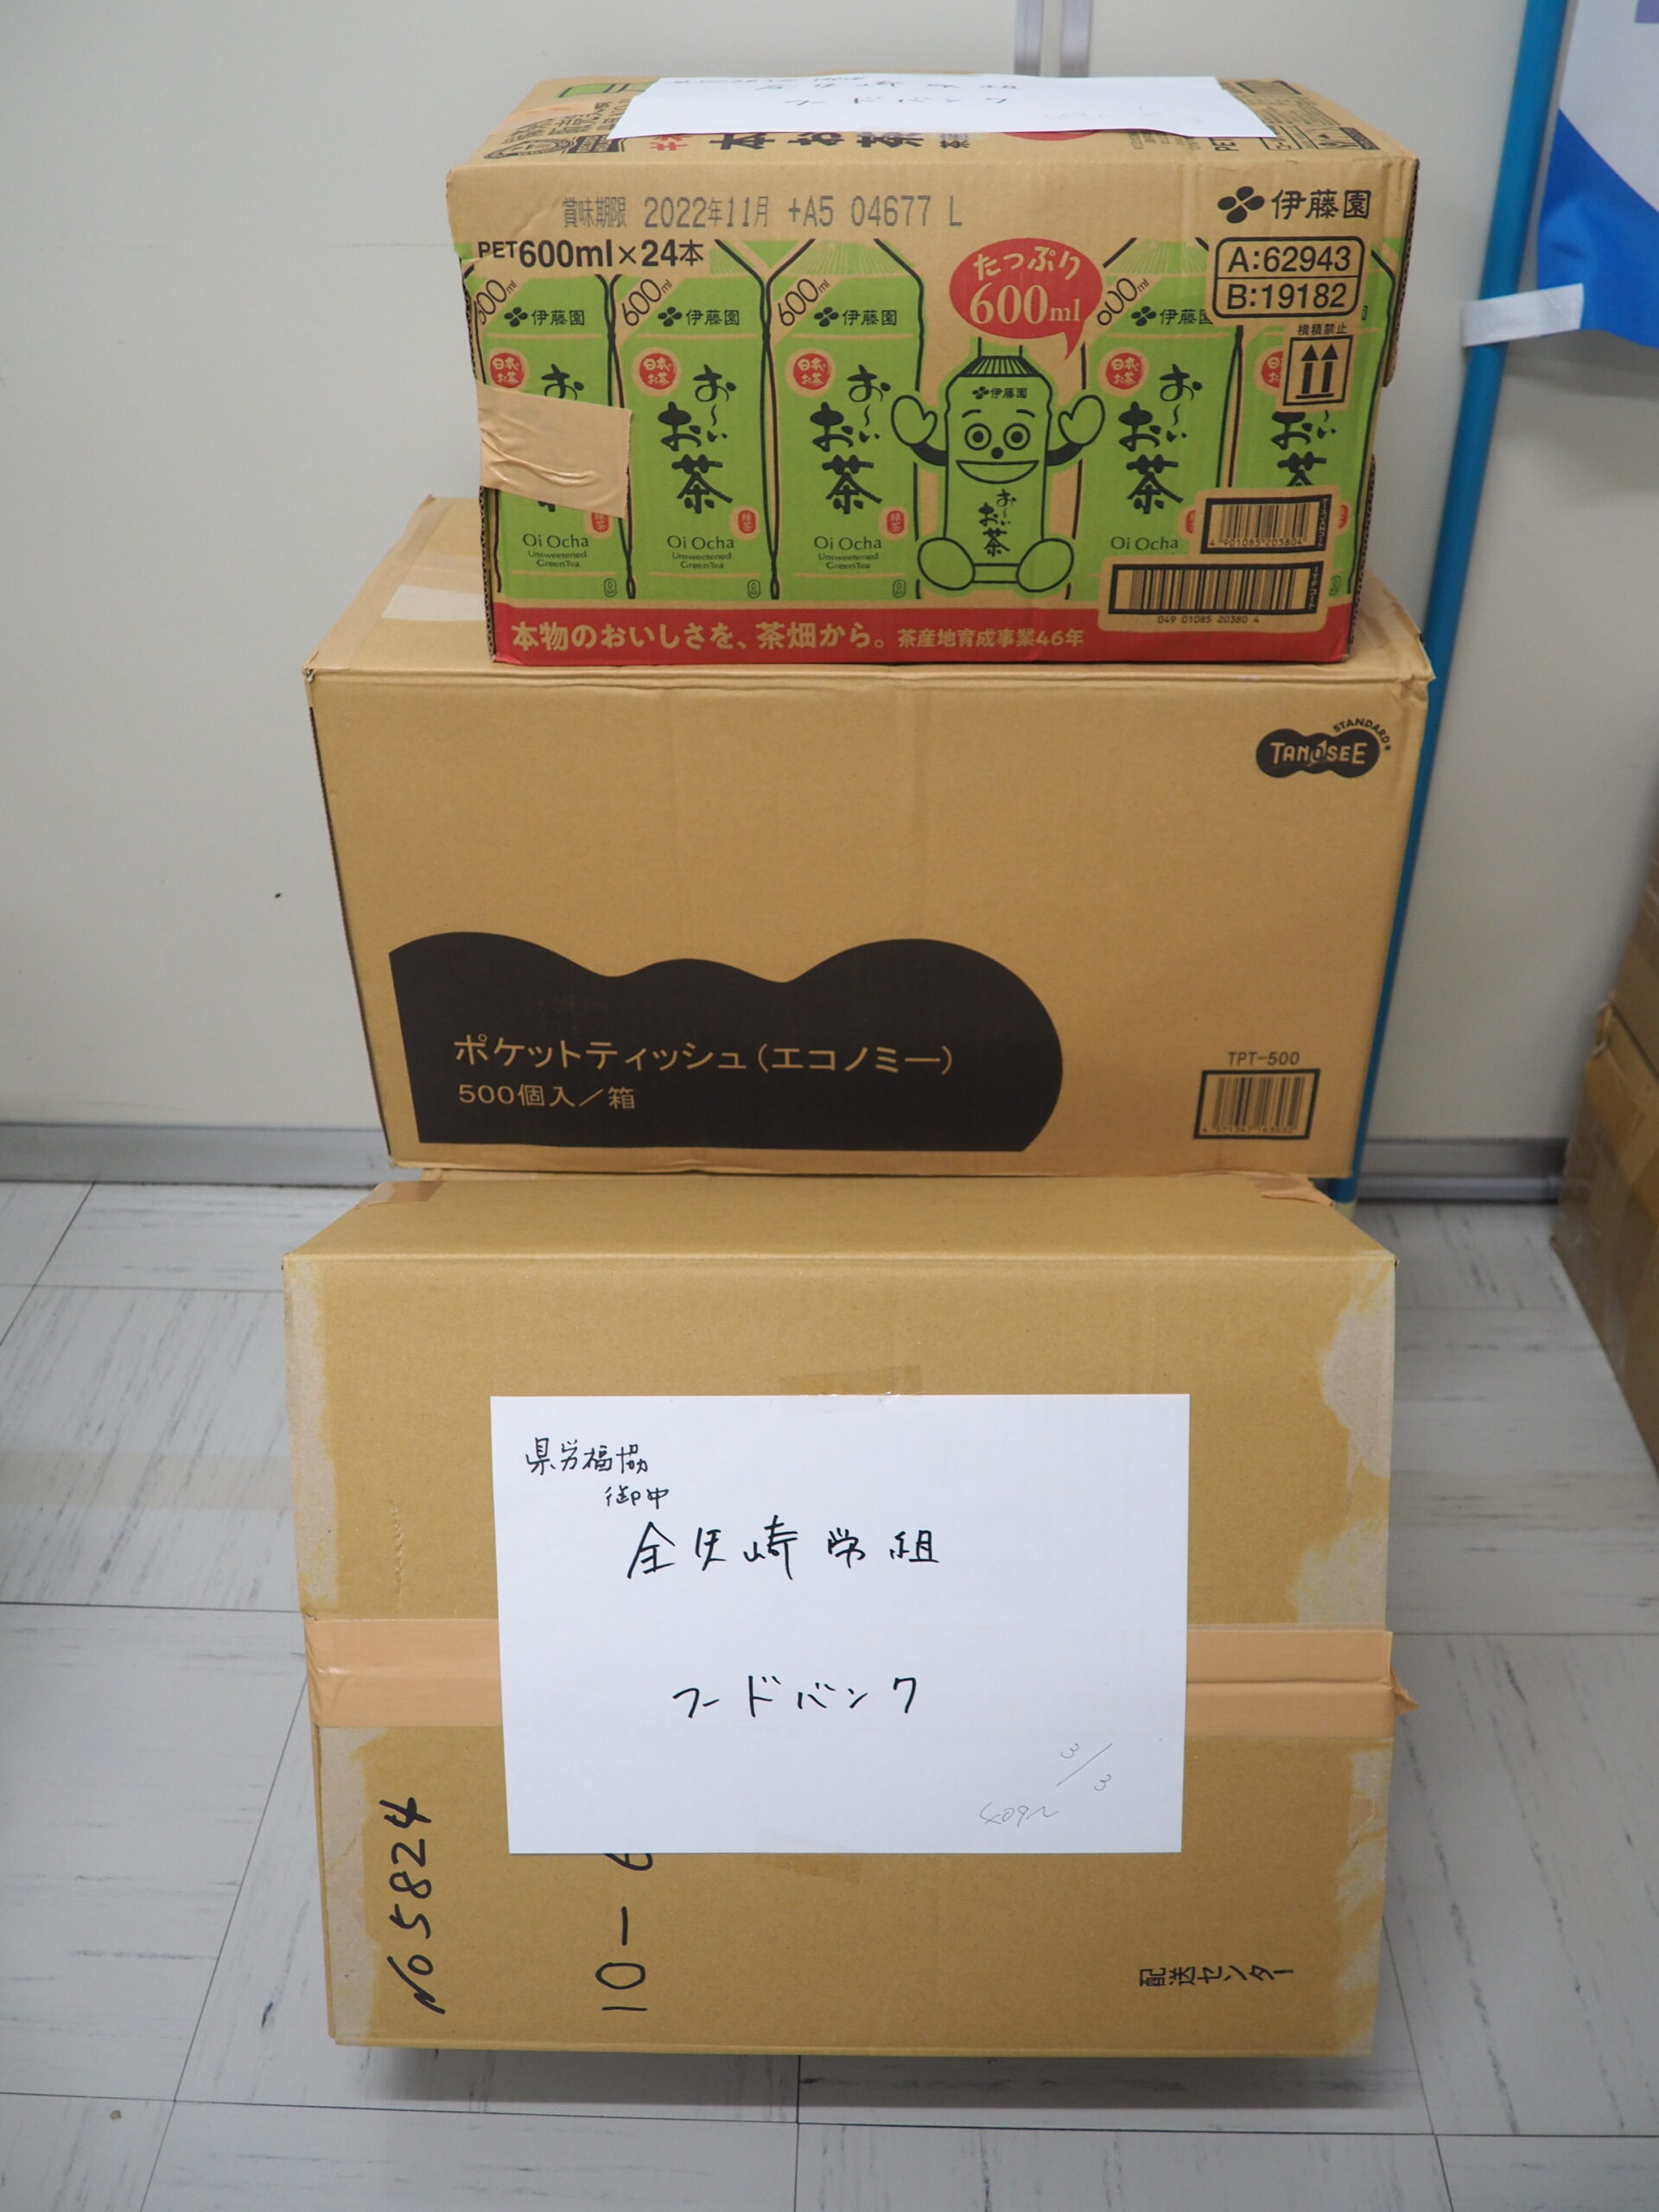 全矢崎労働組合様・全矢崎労働組合裾野支部様から食品を提供いただきました。